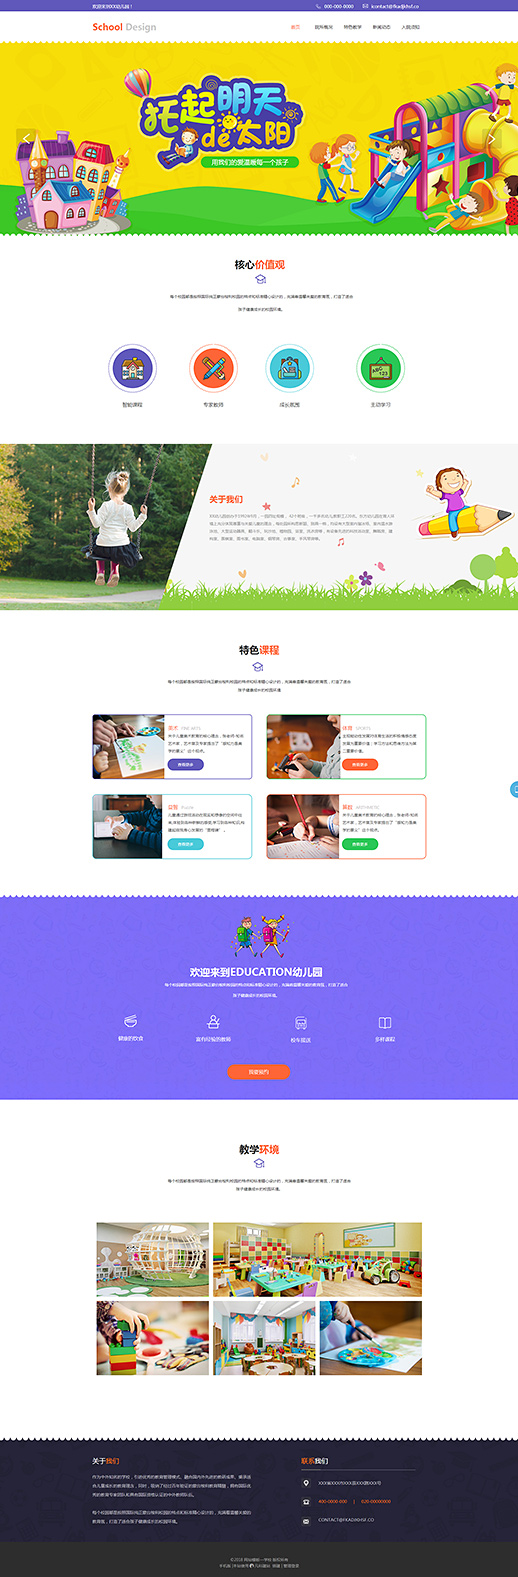 创意学校幼儿园网站模板